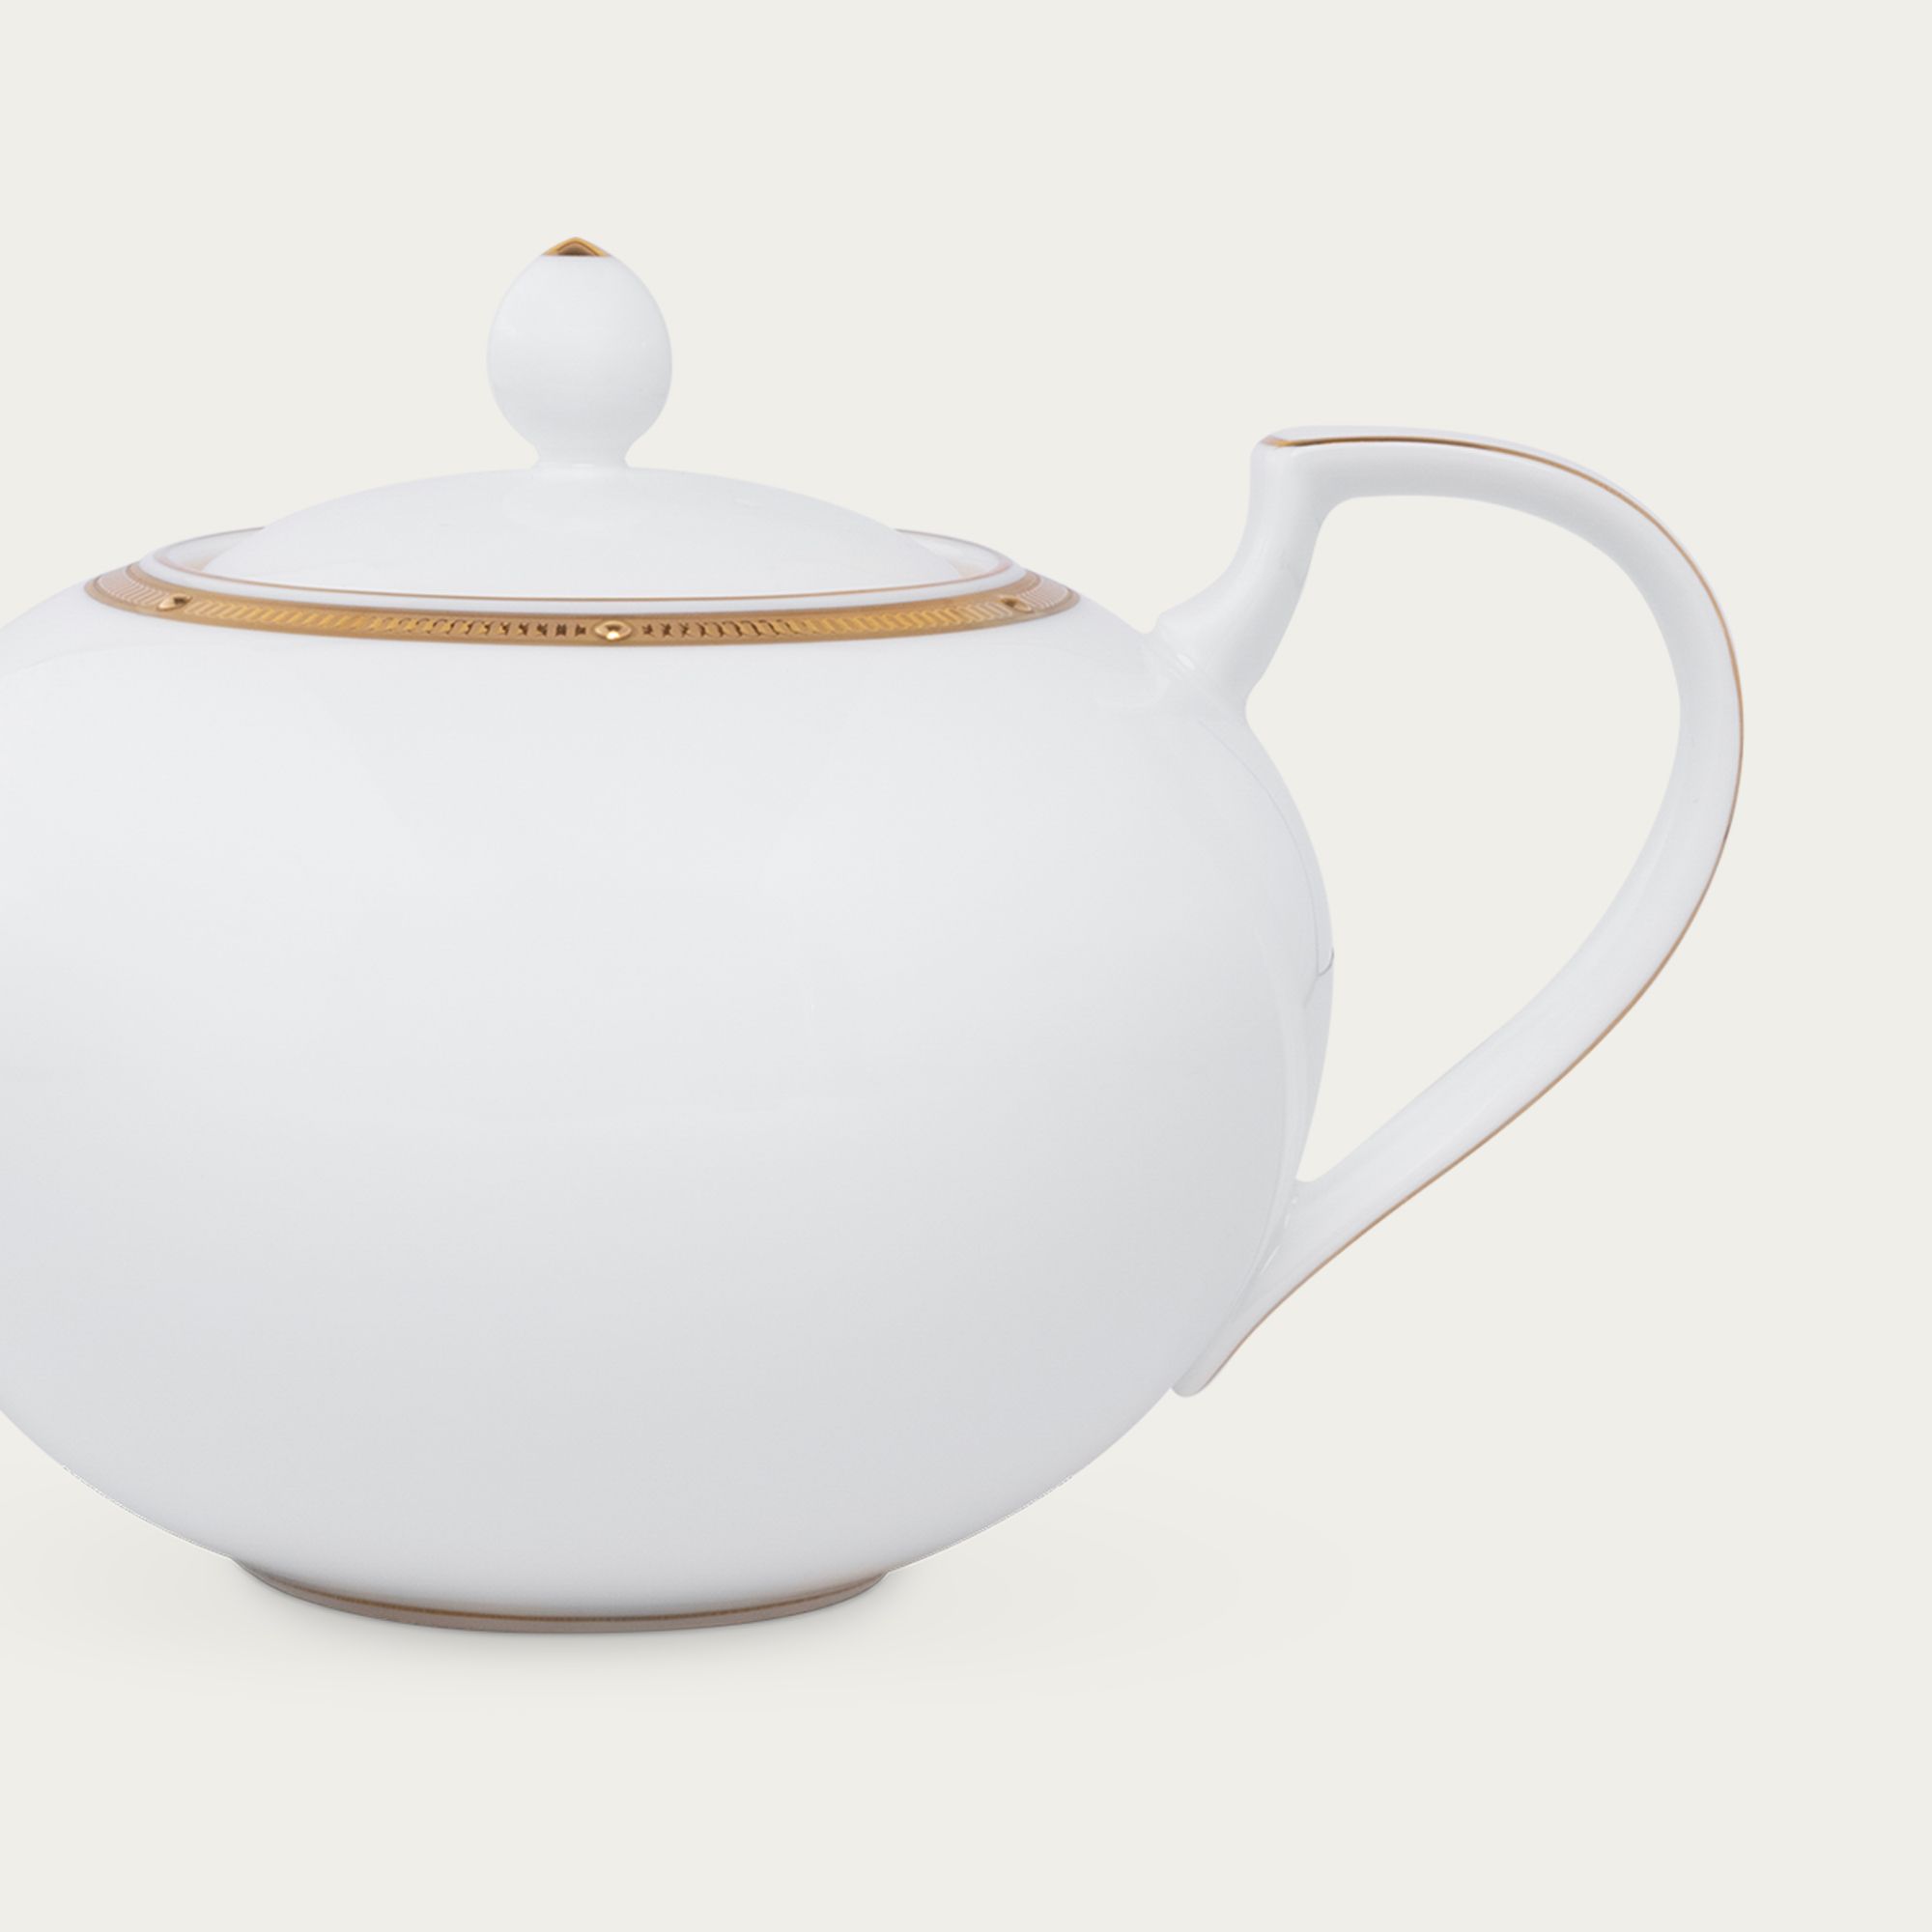  Ấm trà (bình trà) 1.150ml sứ xương | Rochelle Gold 4796L-59533A 